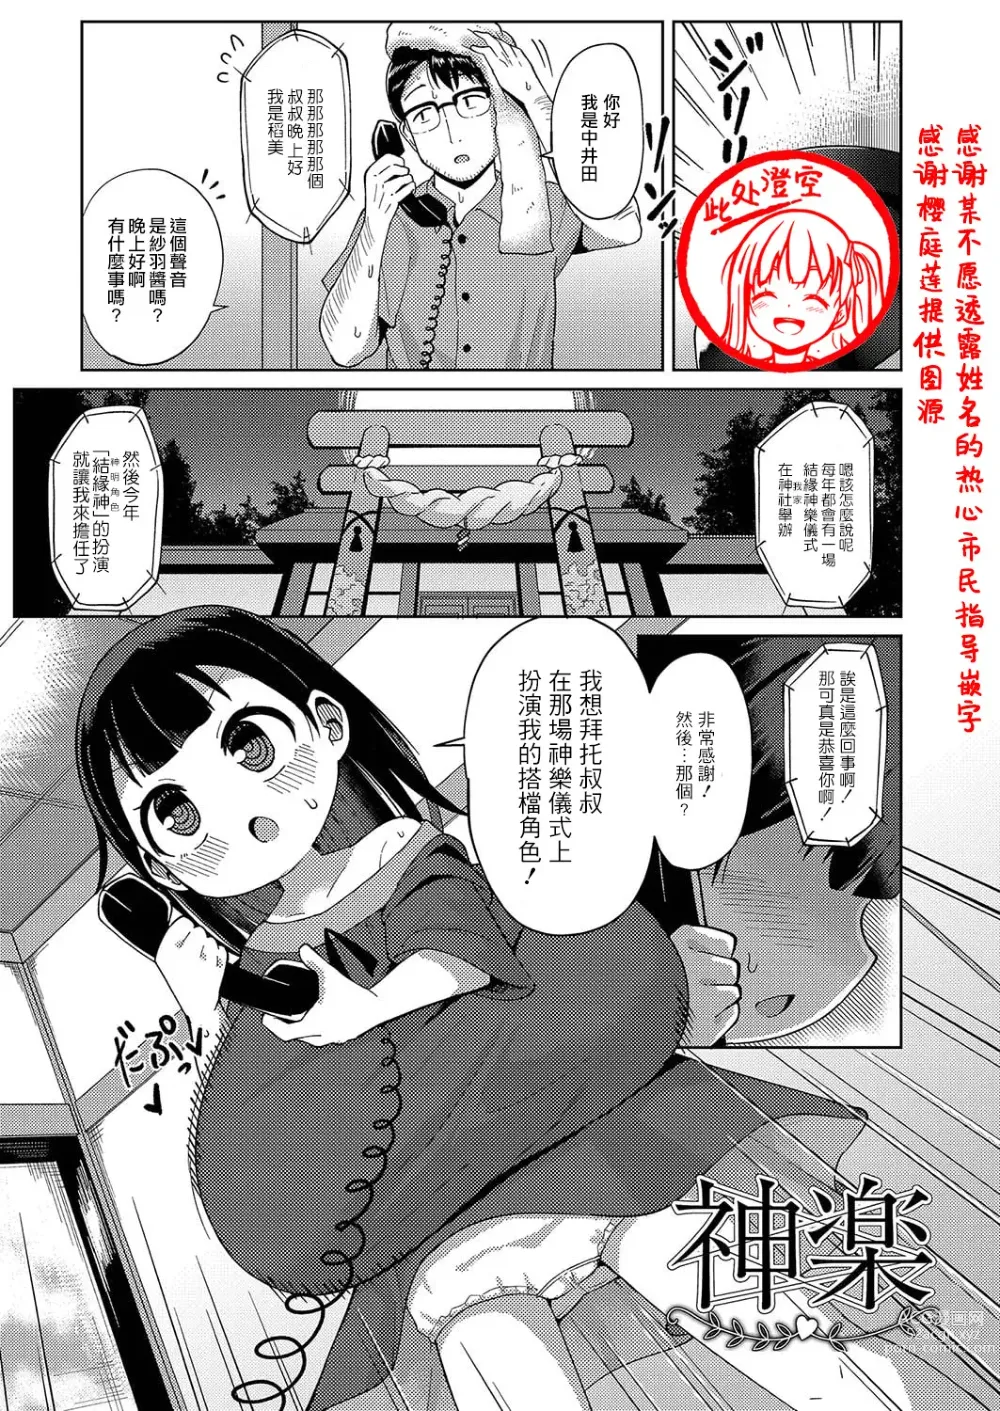 Page 1 of manga Kagura